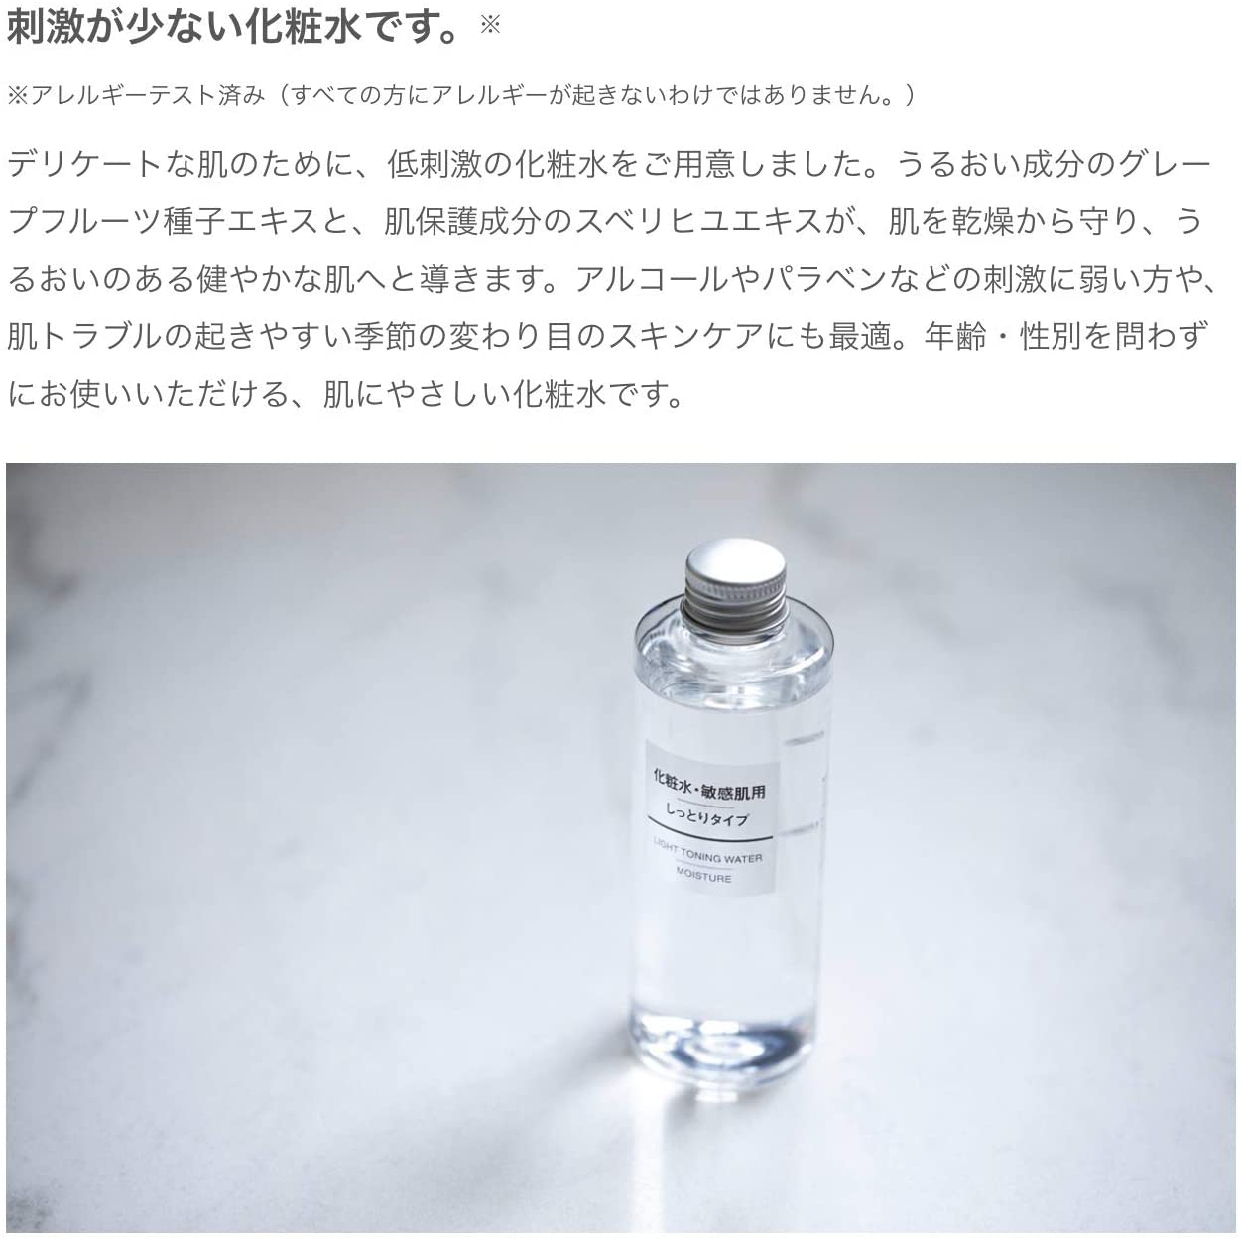 無印良品(MUJI) 化粧水・敏感肌用・高保湿タイプの商品画像13 